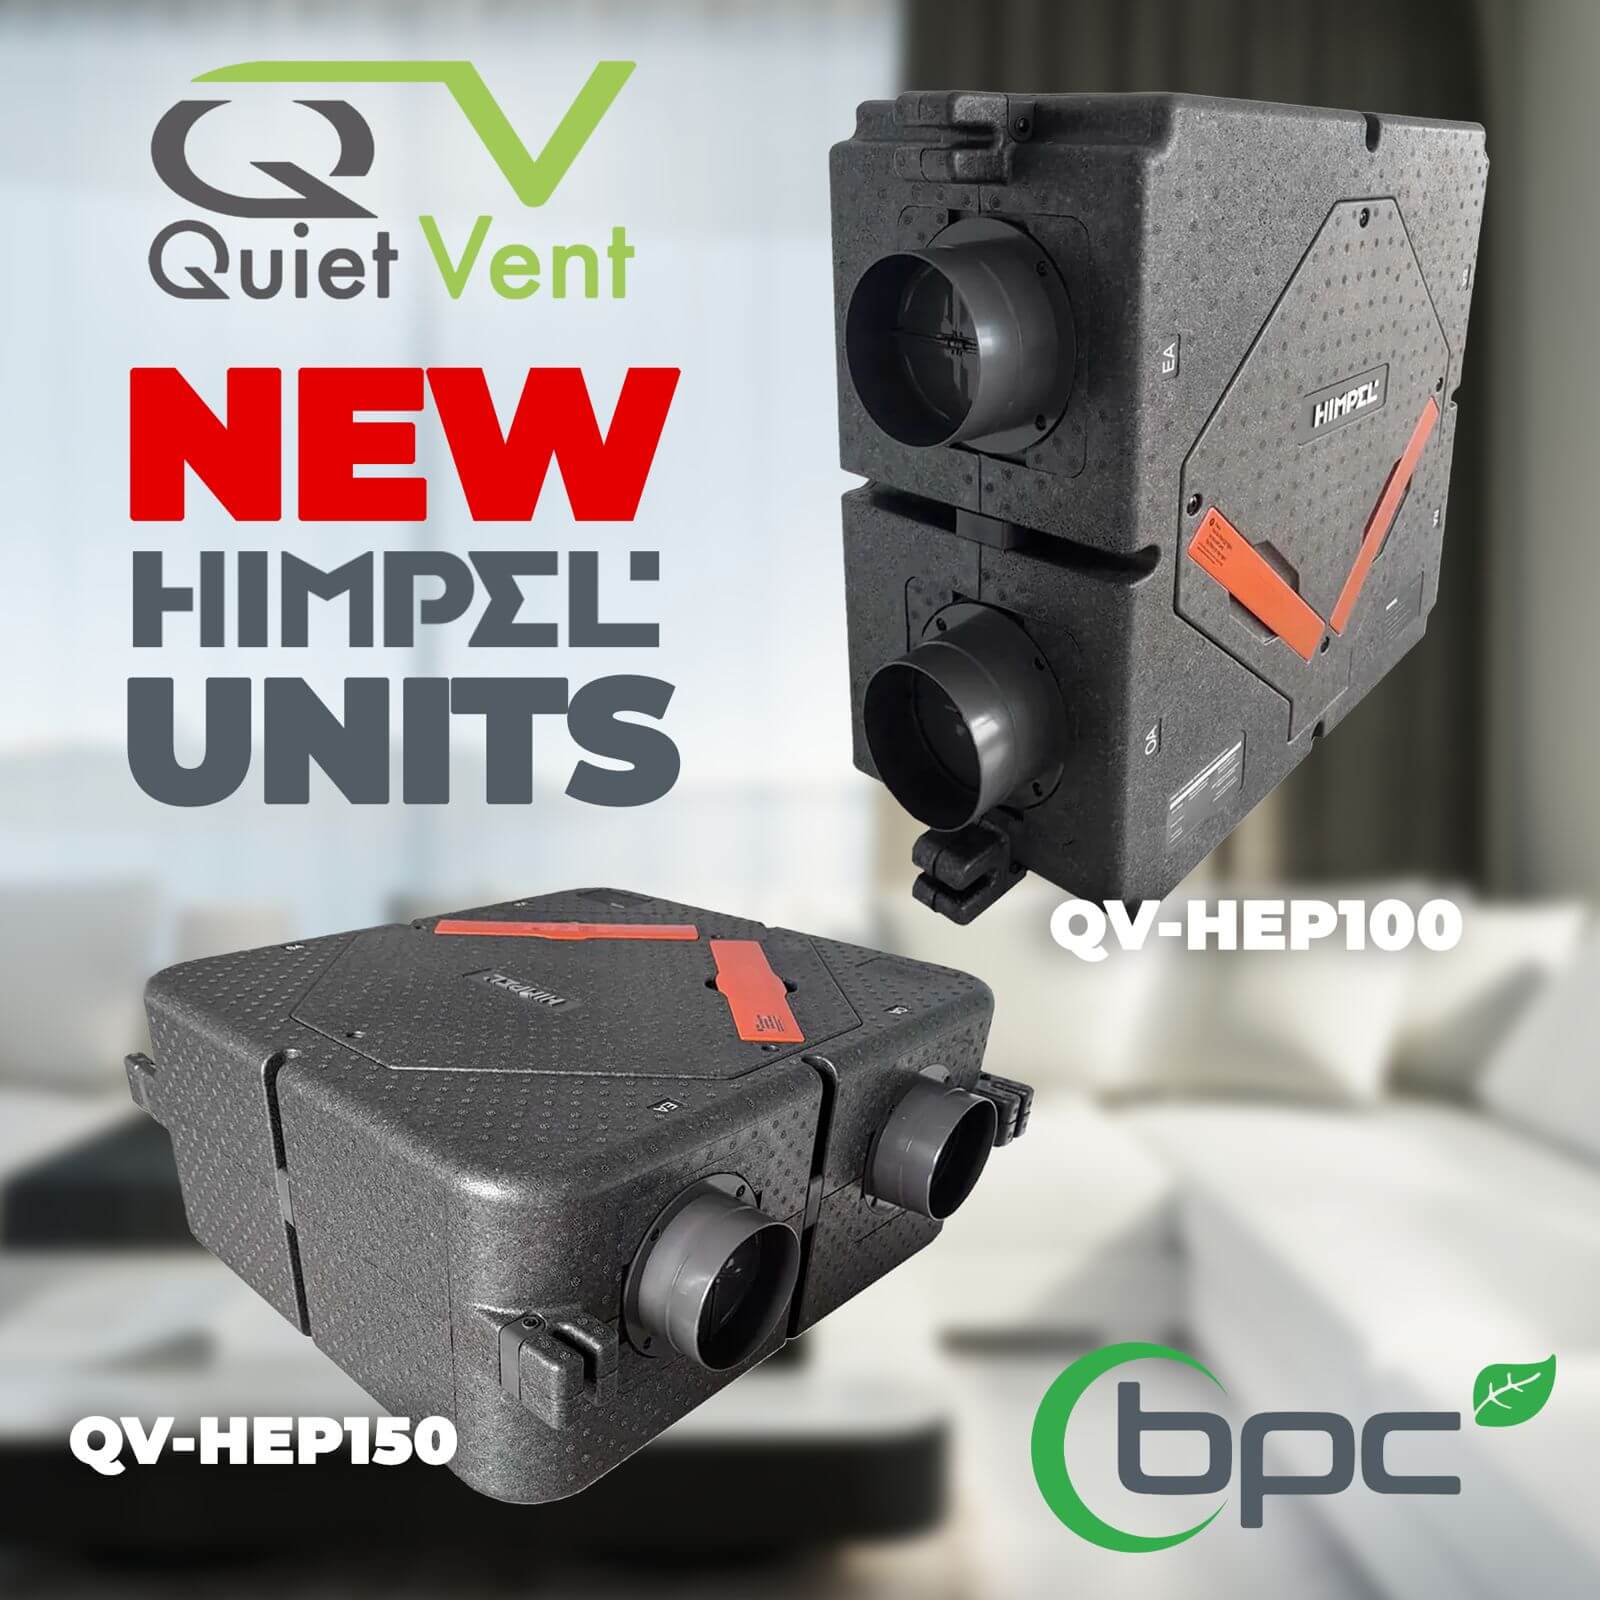 Introducing the NEW Quiet-Vent HIMPEL Units